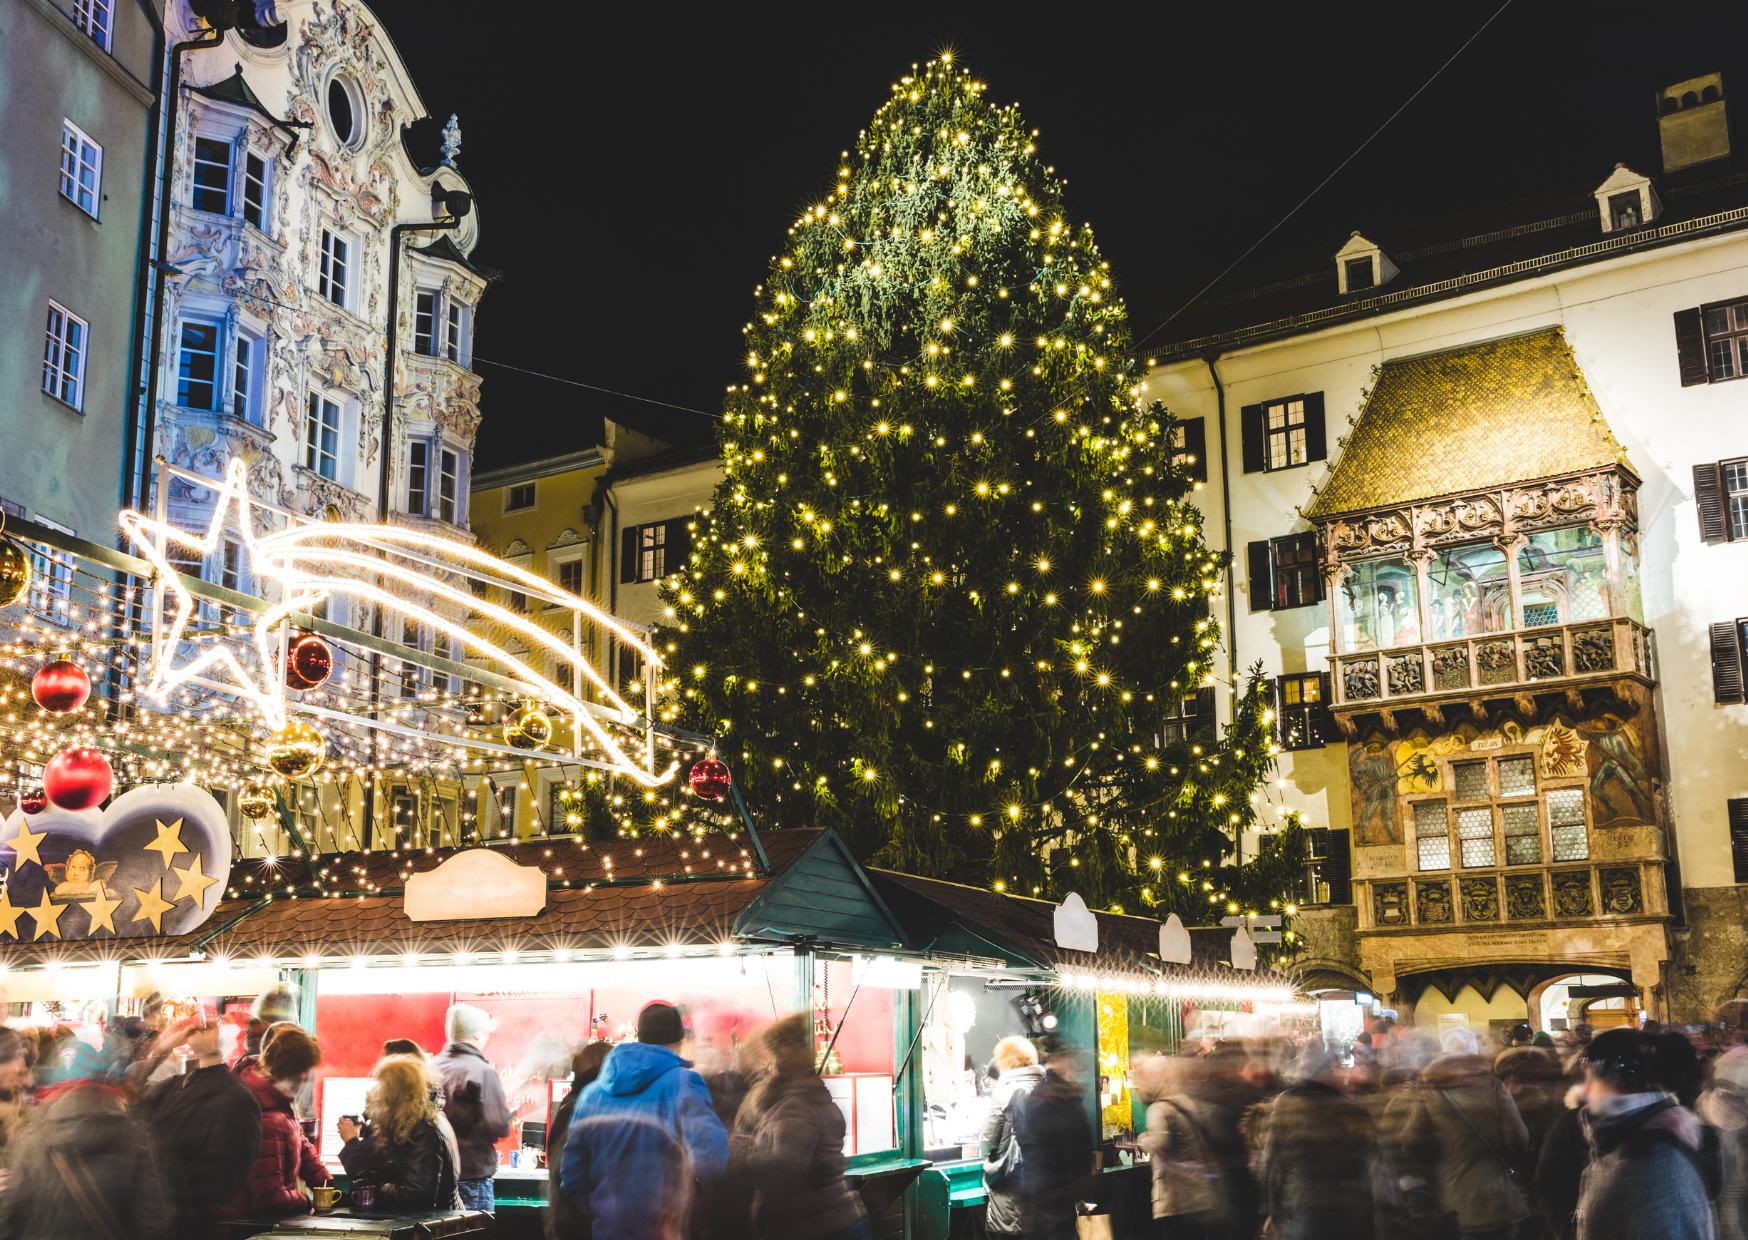 Innsbrucker Weihnachtsmarkt